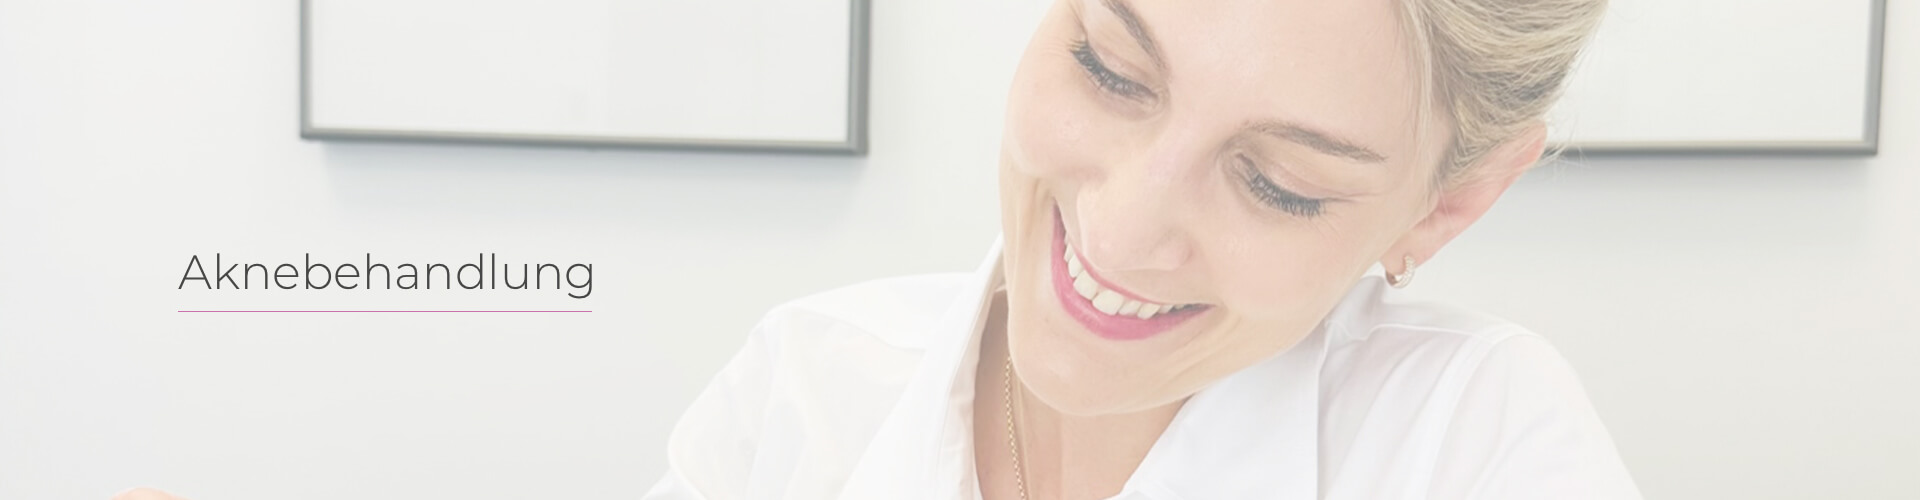 Dr. Christina Haut lächelnd in ihrer Praxis, präsentiert Materialien zur Aknebehandlung, umgeben von medizinischen Instrumenten und Informationsmaterialien, vermittelt eine positive und professionelle Atmosphäre für die Behandlung von Akne.